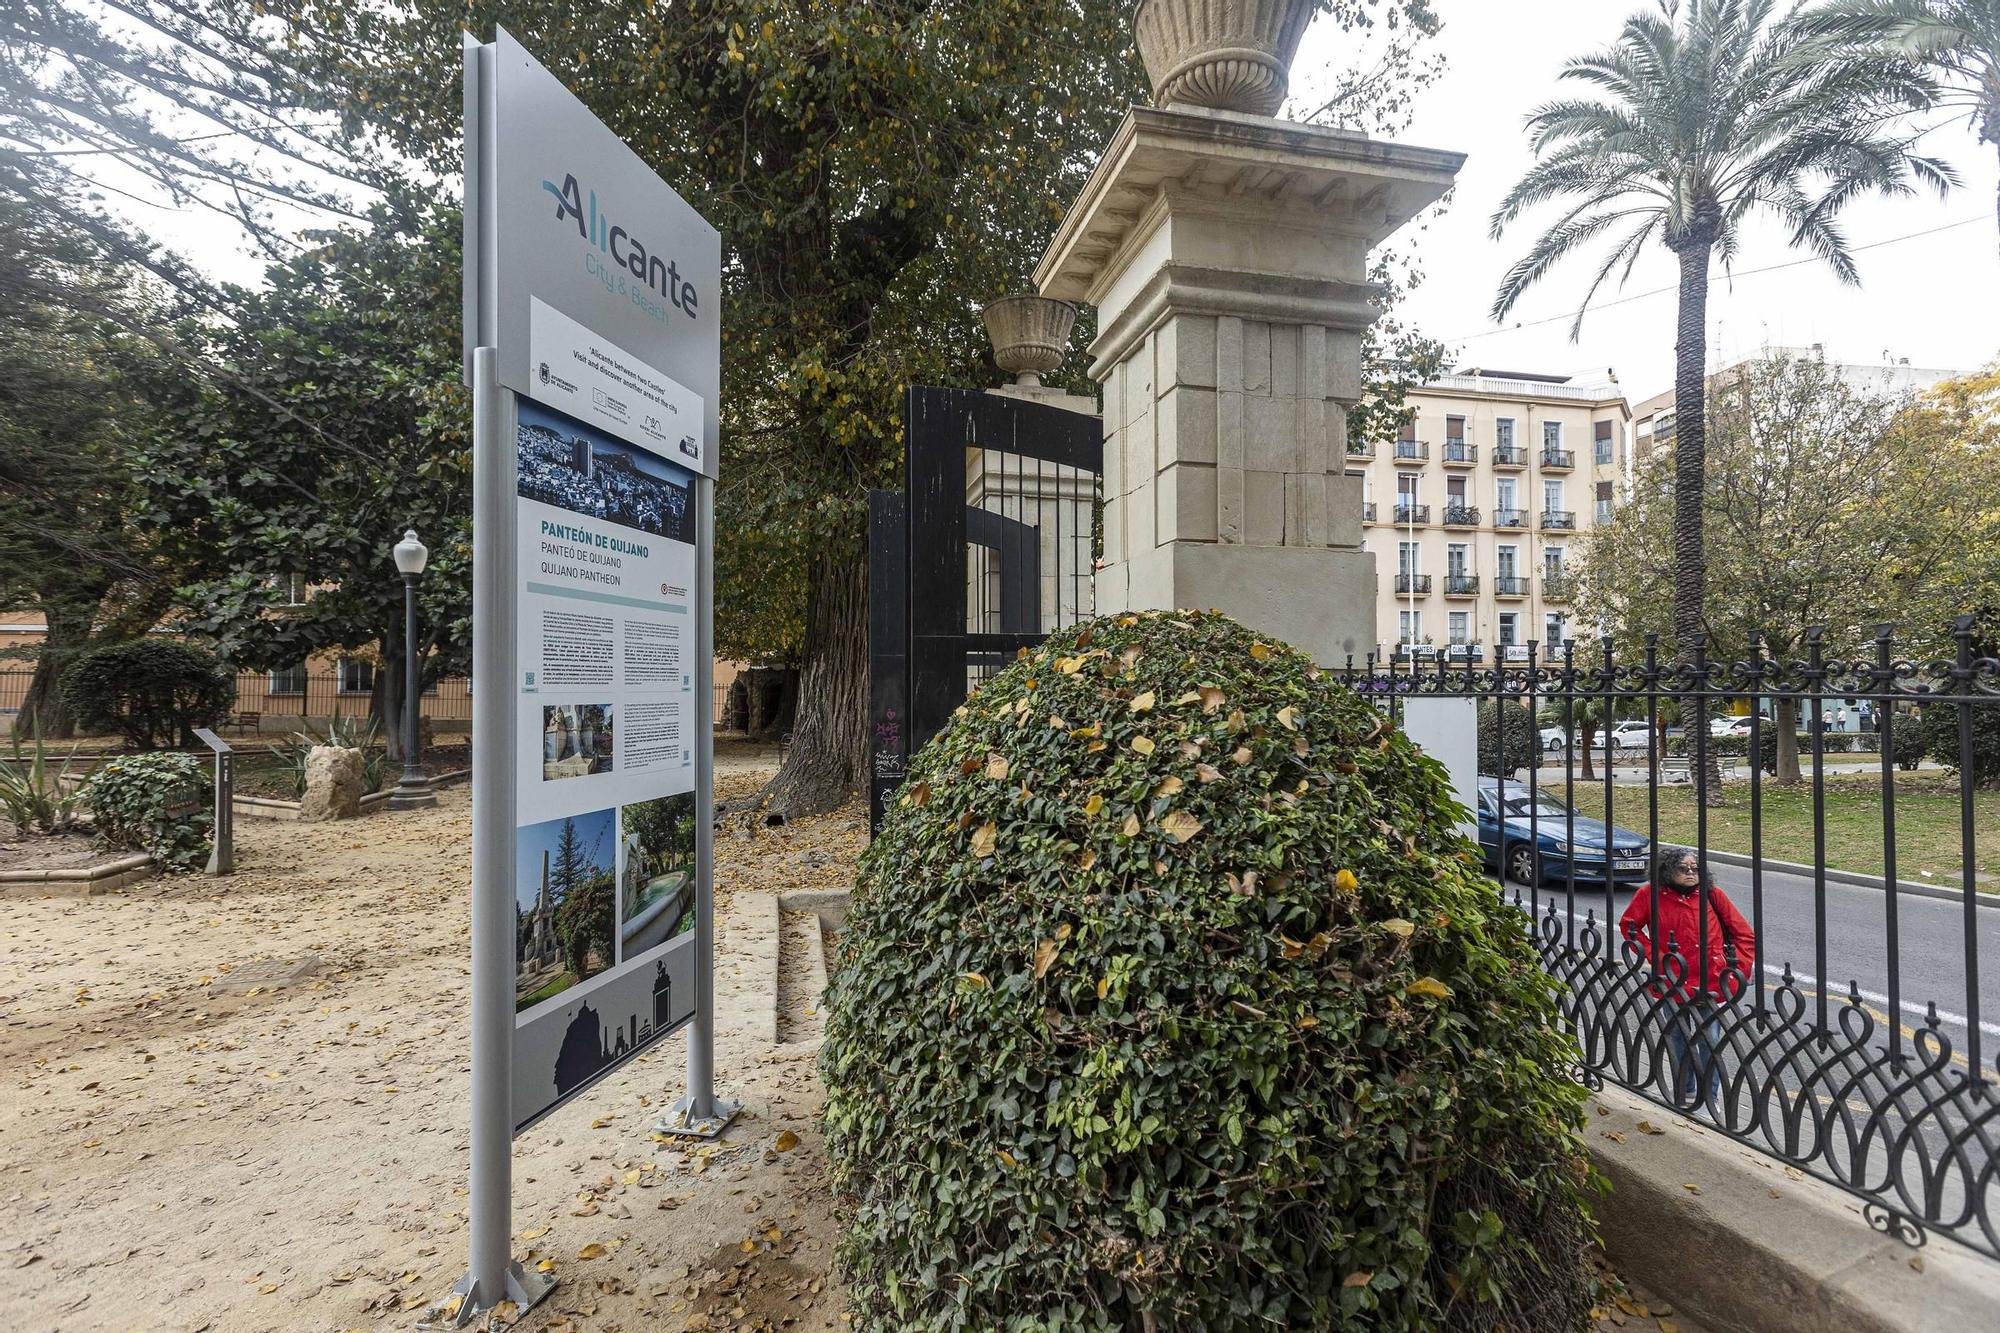 Nuevos paneles informativos para la ciudad de Alicante